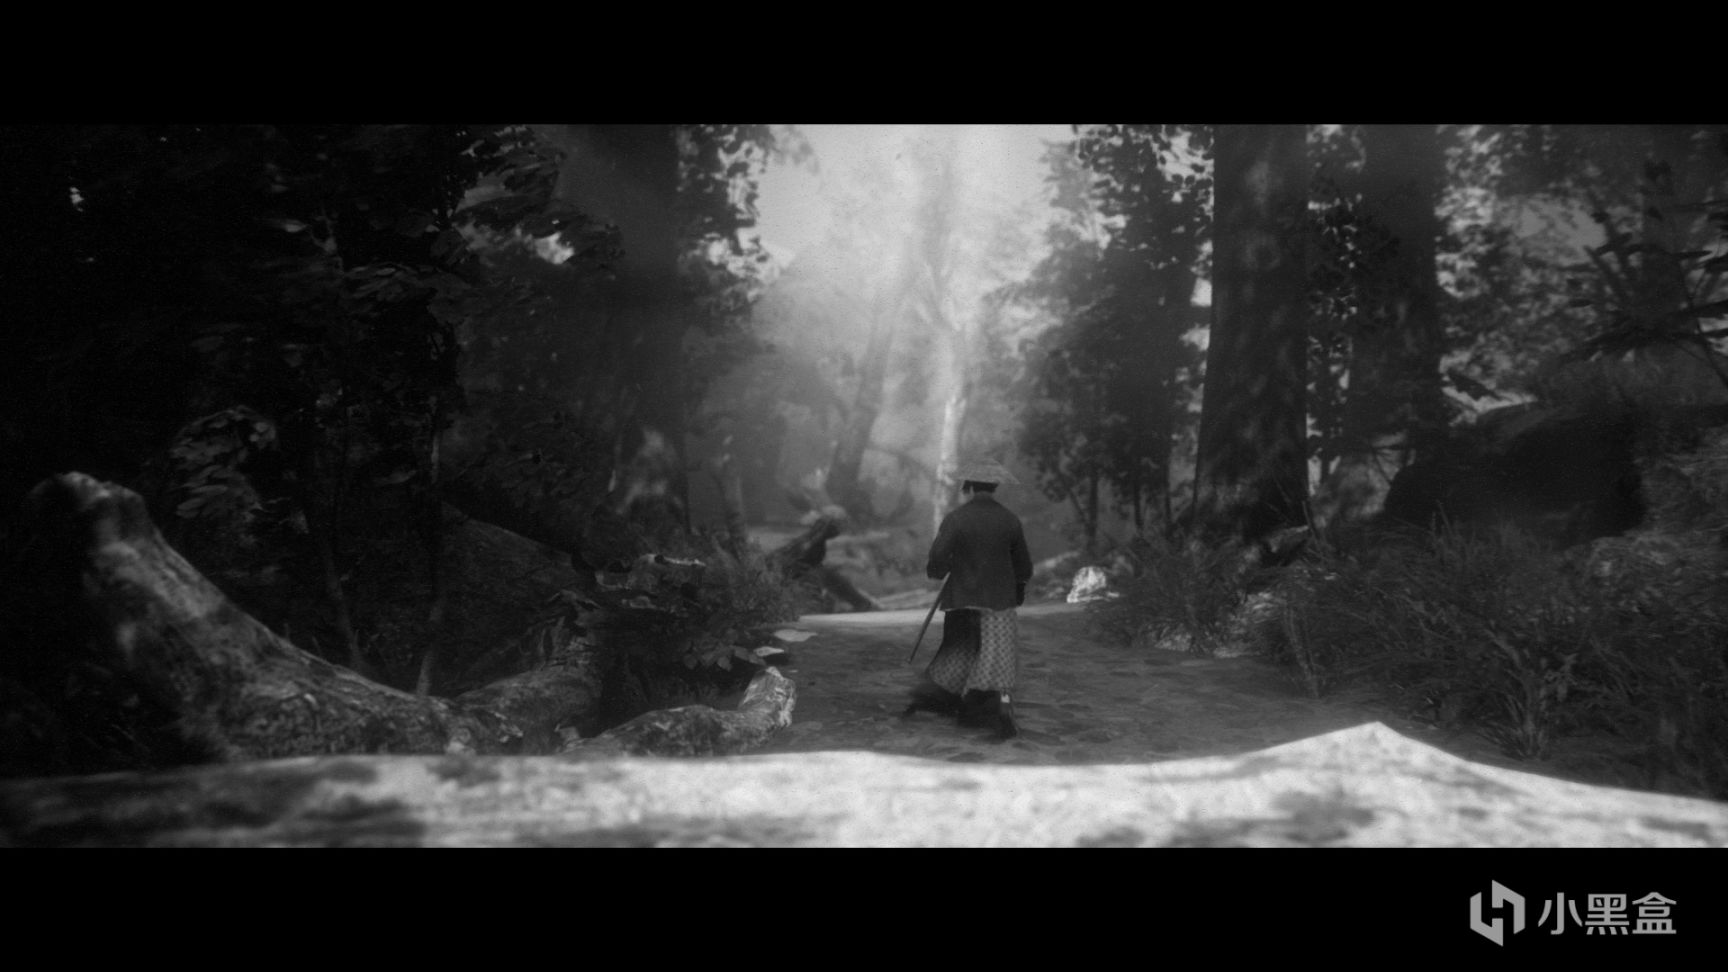 【PC遊戲】復仇武士的“覺醒之路”——《黃泉之路》截圖瞎雞兒創作-第3張